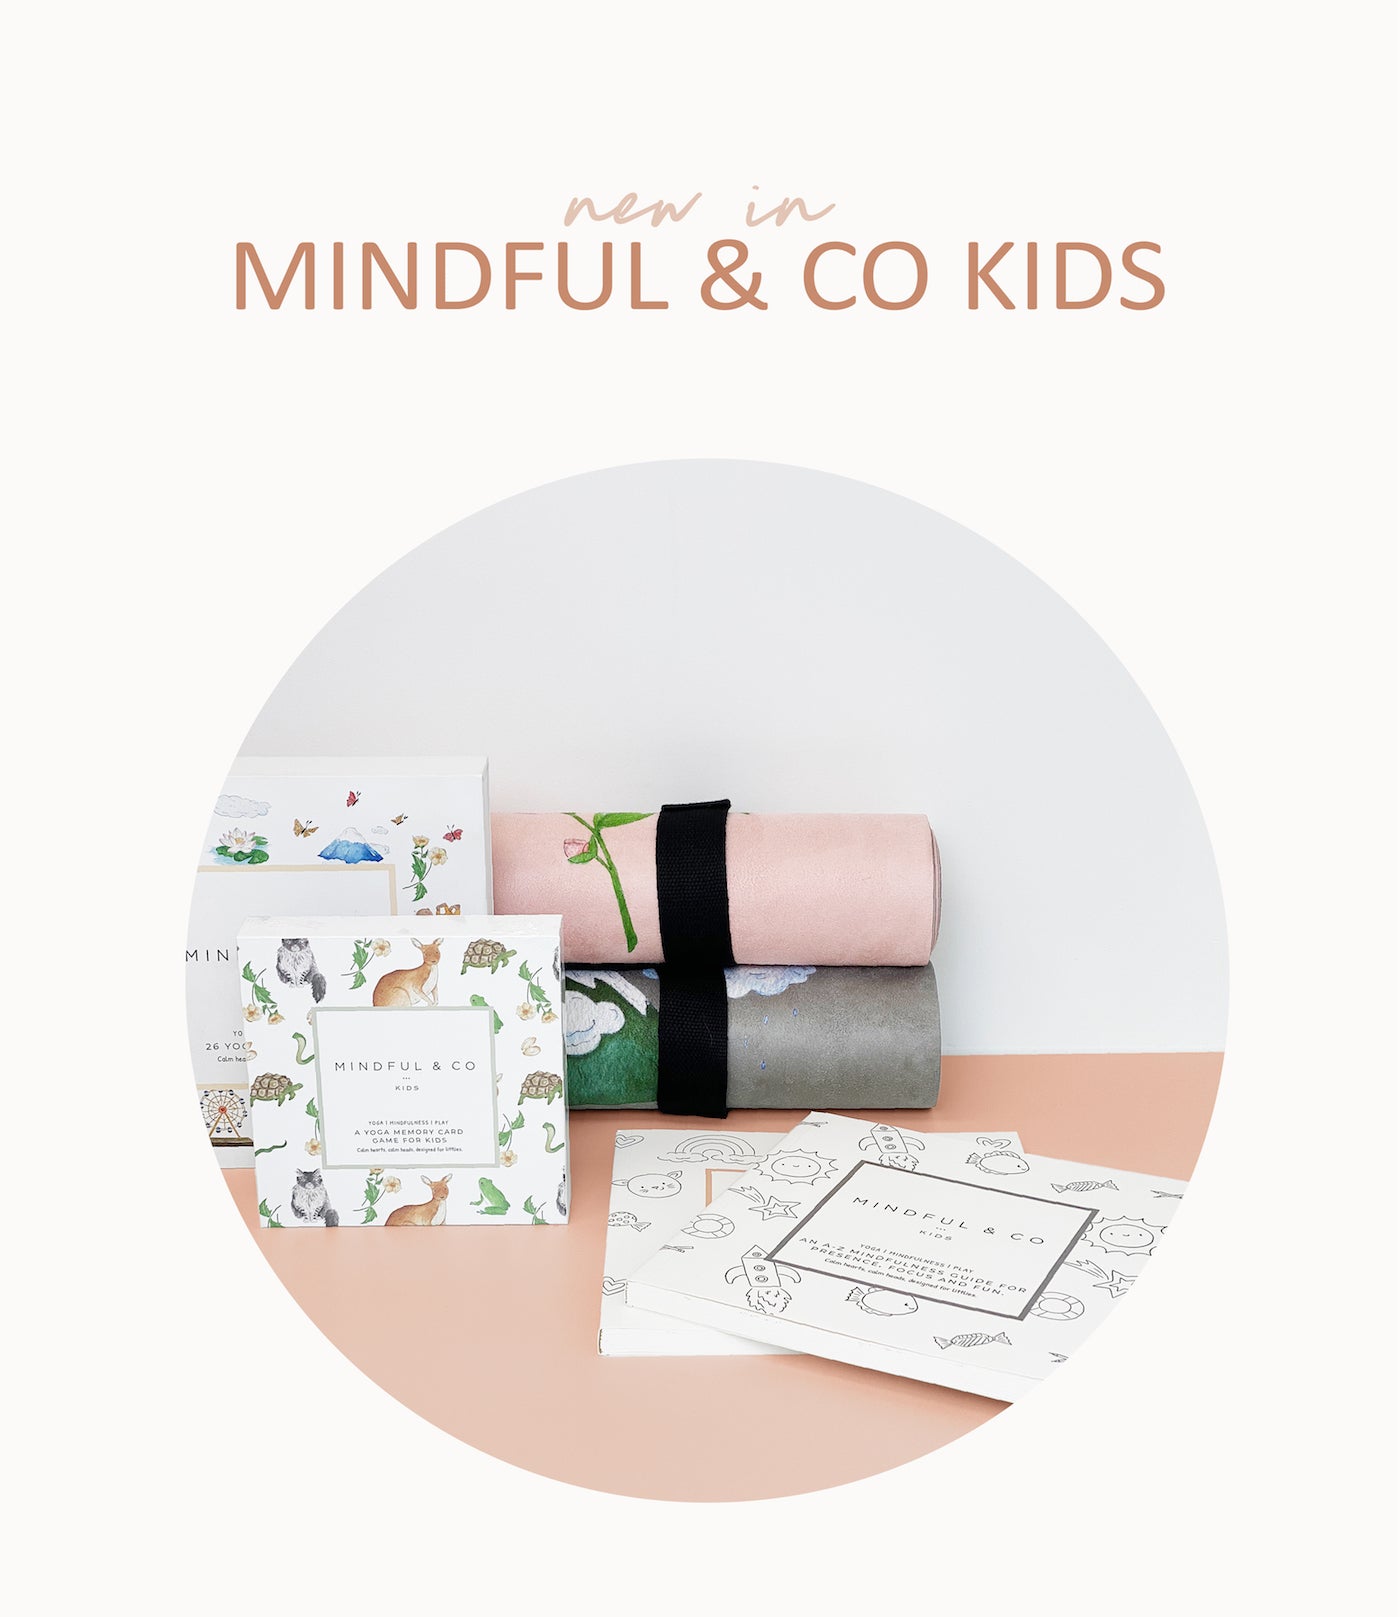 MINDFUL & CO KIDS